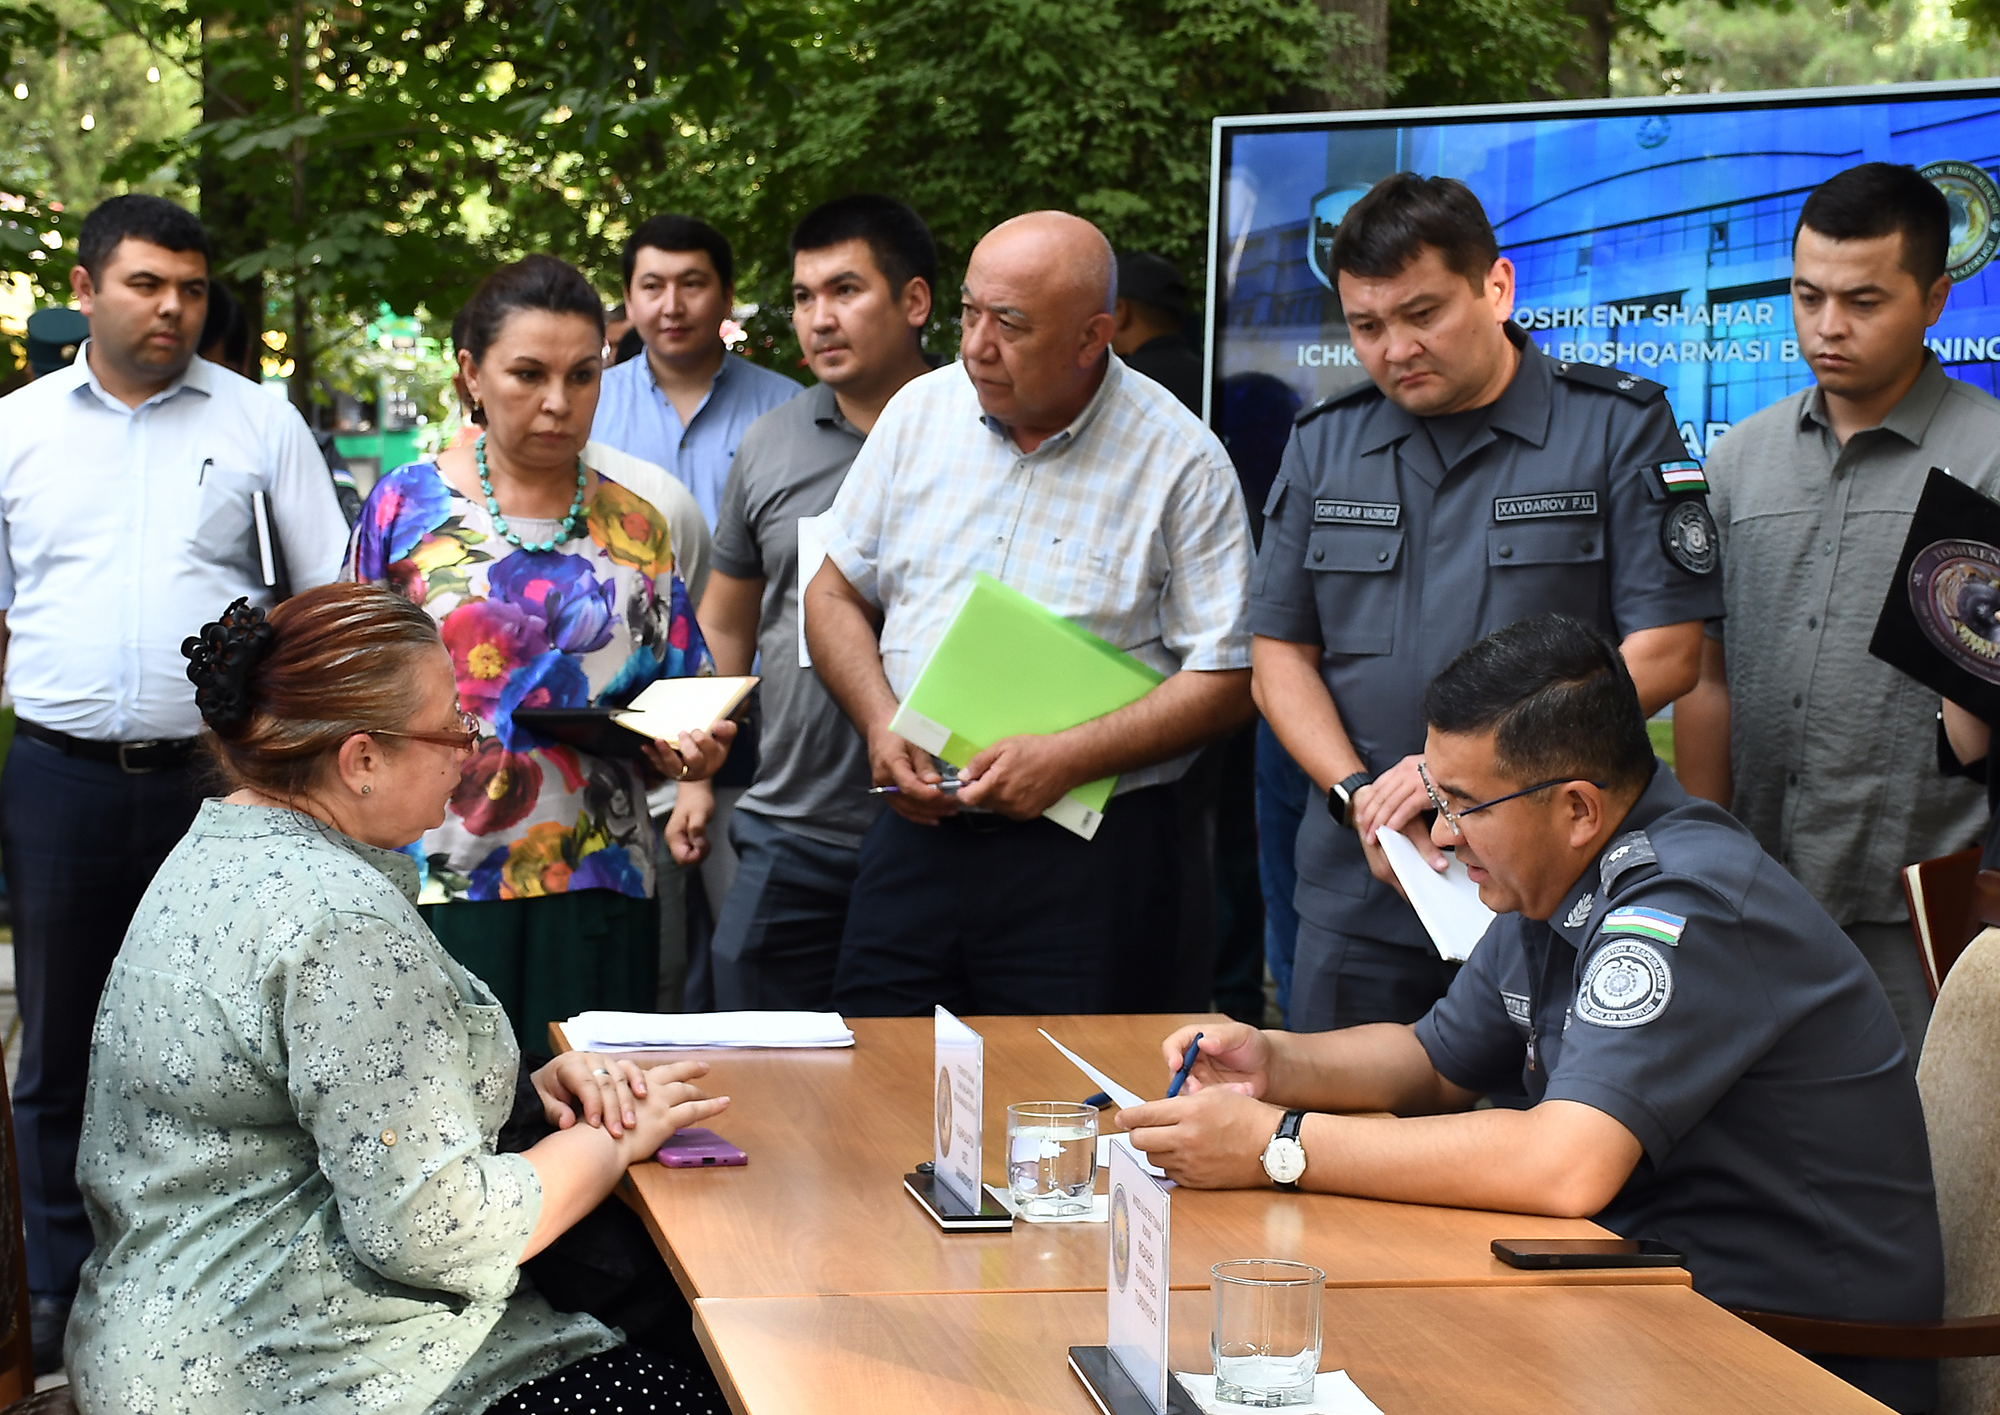 Обращения граждан – в центре постоянного внимания ГУВД г. Ташкента